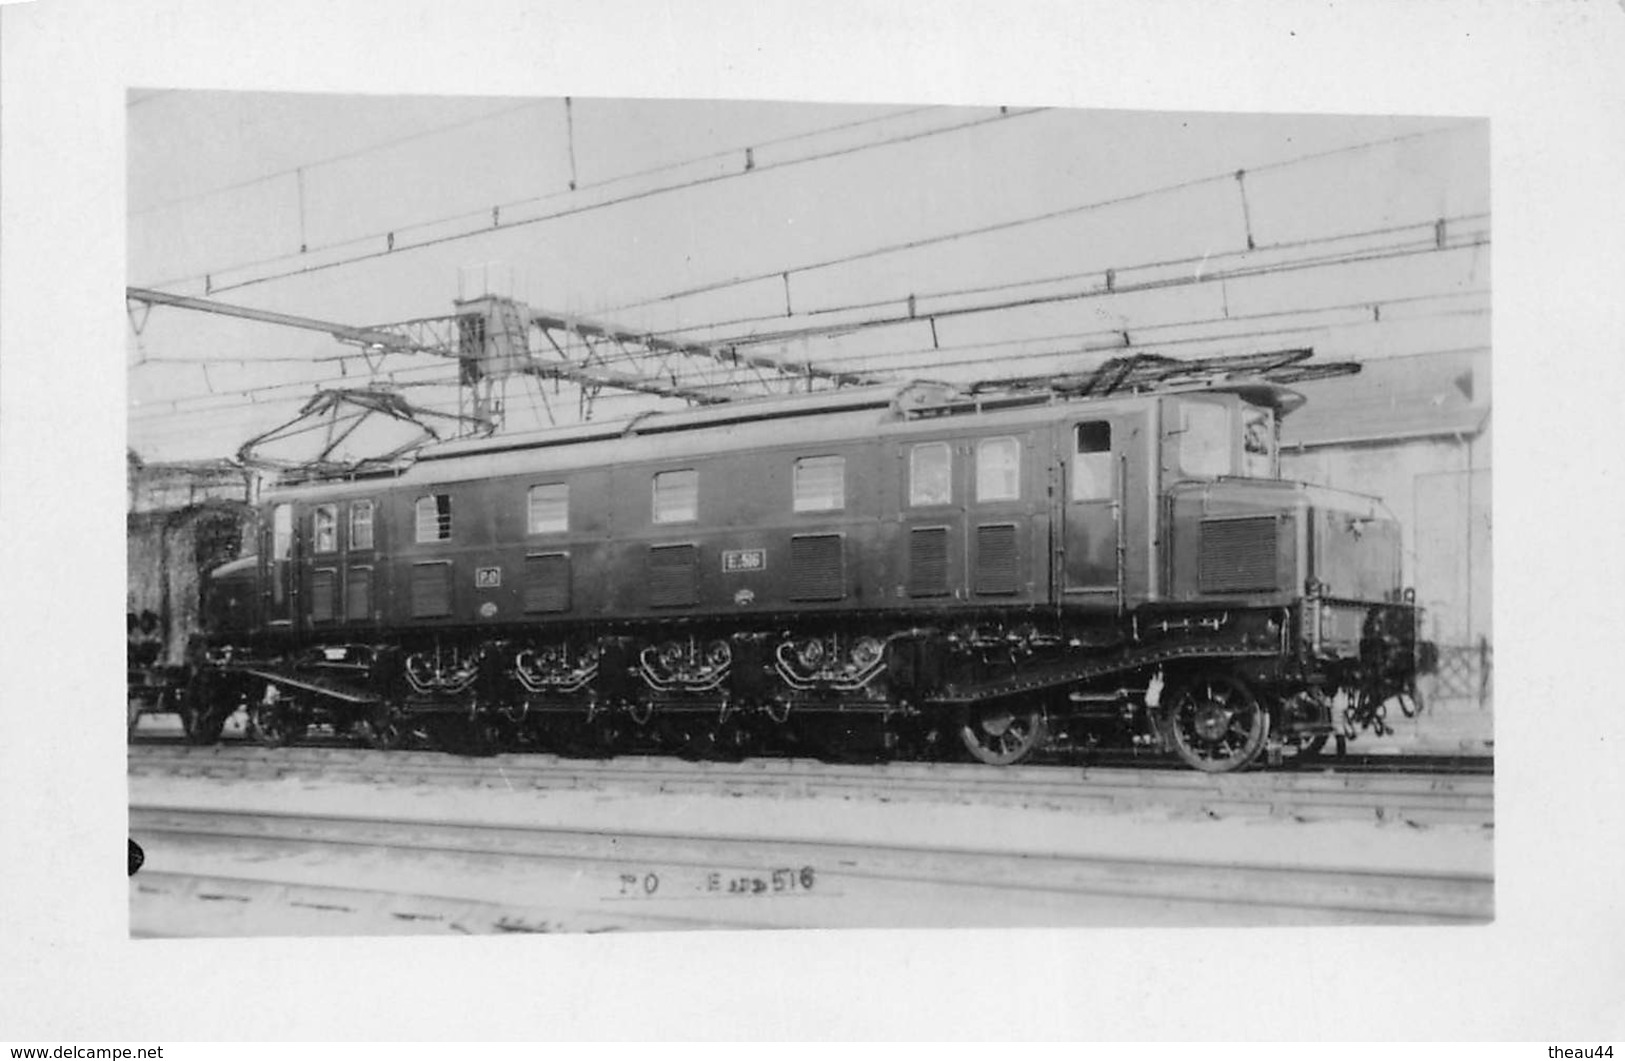 ¤¤  -  Carte-Photo D'une Locomotive - Chemins De Fer - Machine Electrique E. 516  - Train En Gare  -  ¤¤ - Treni